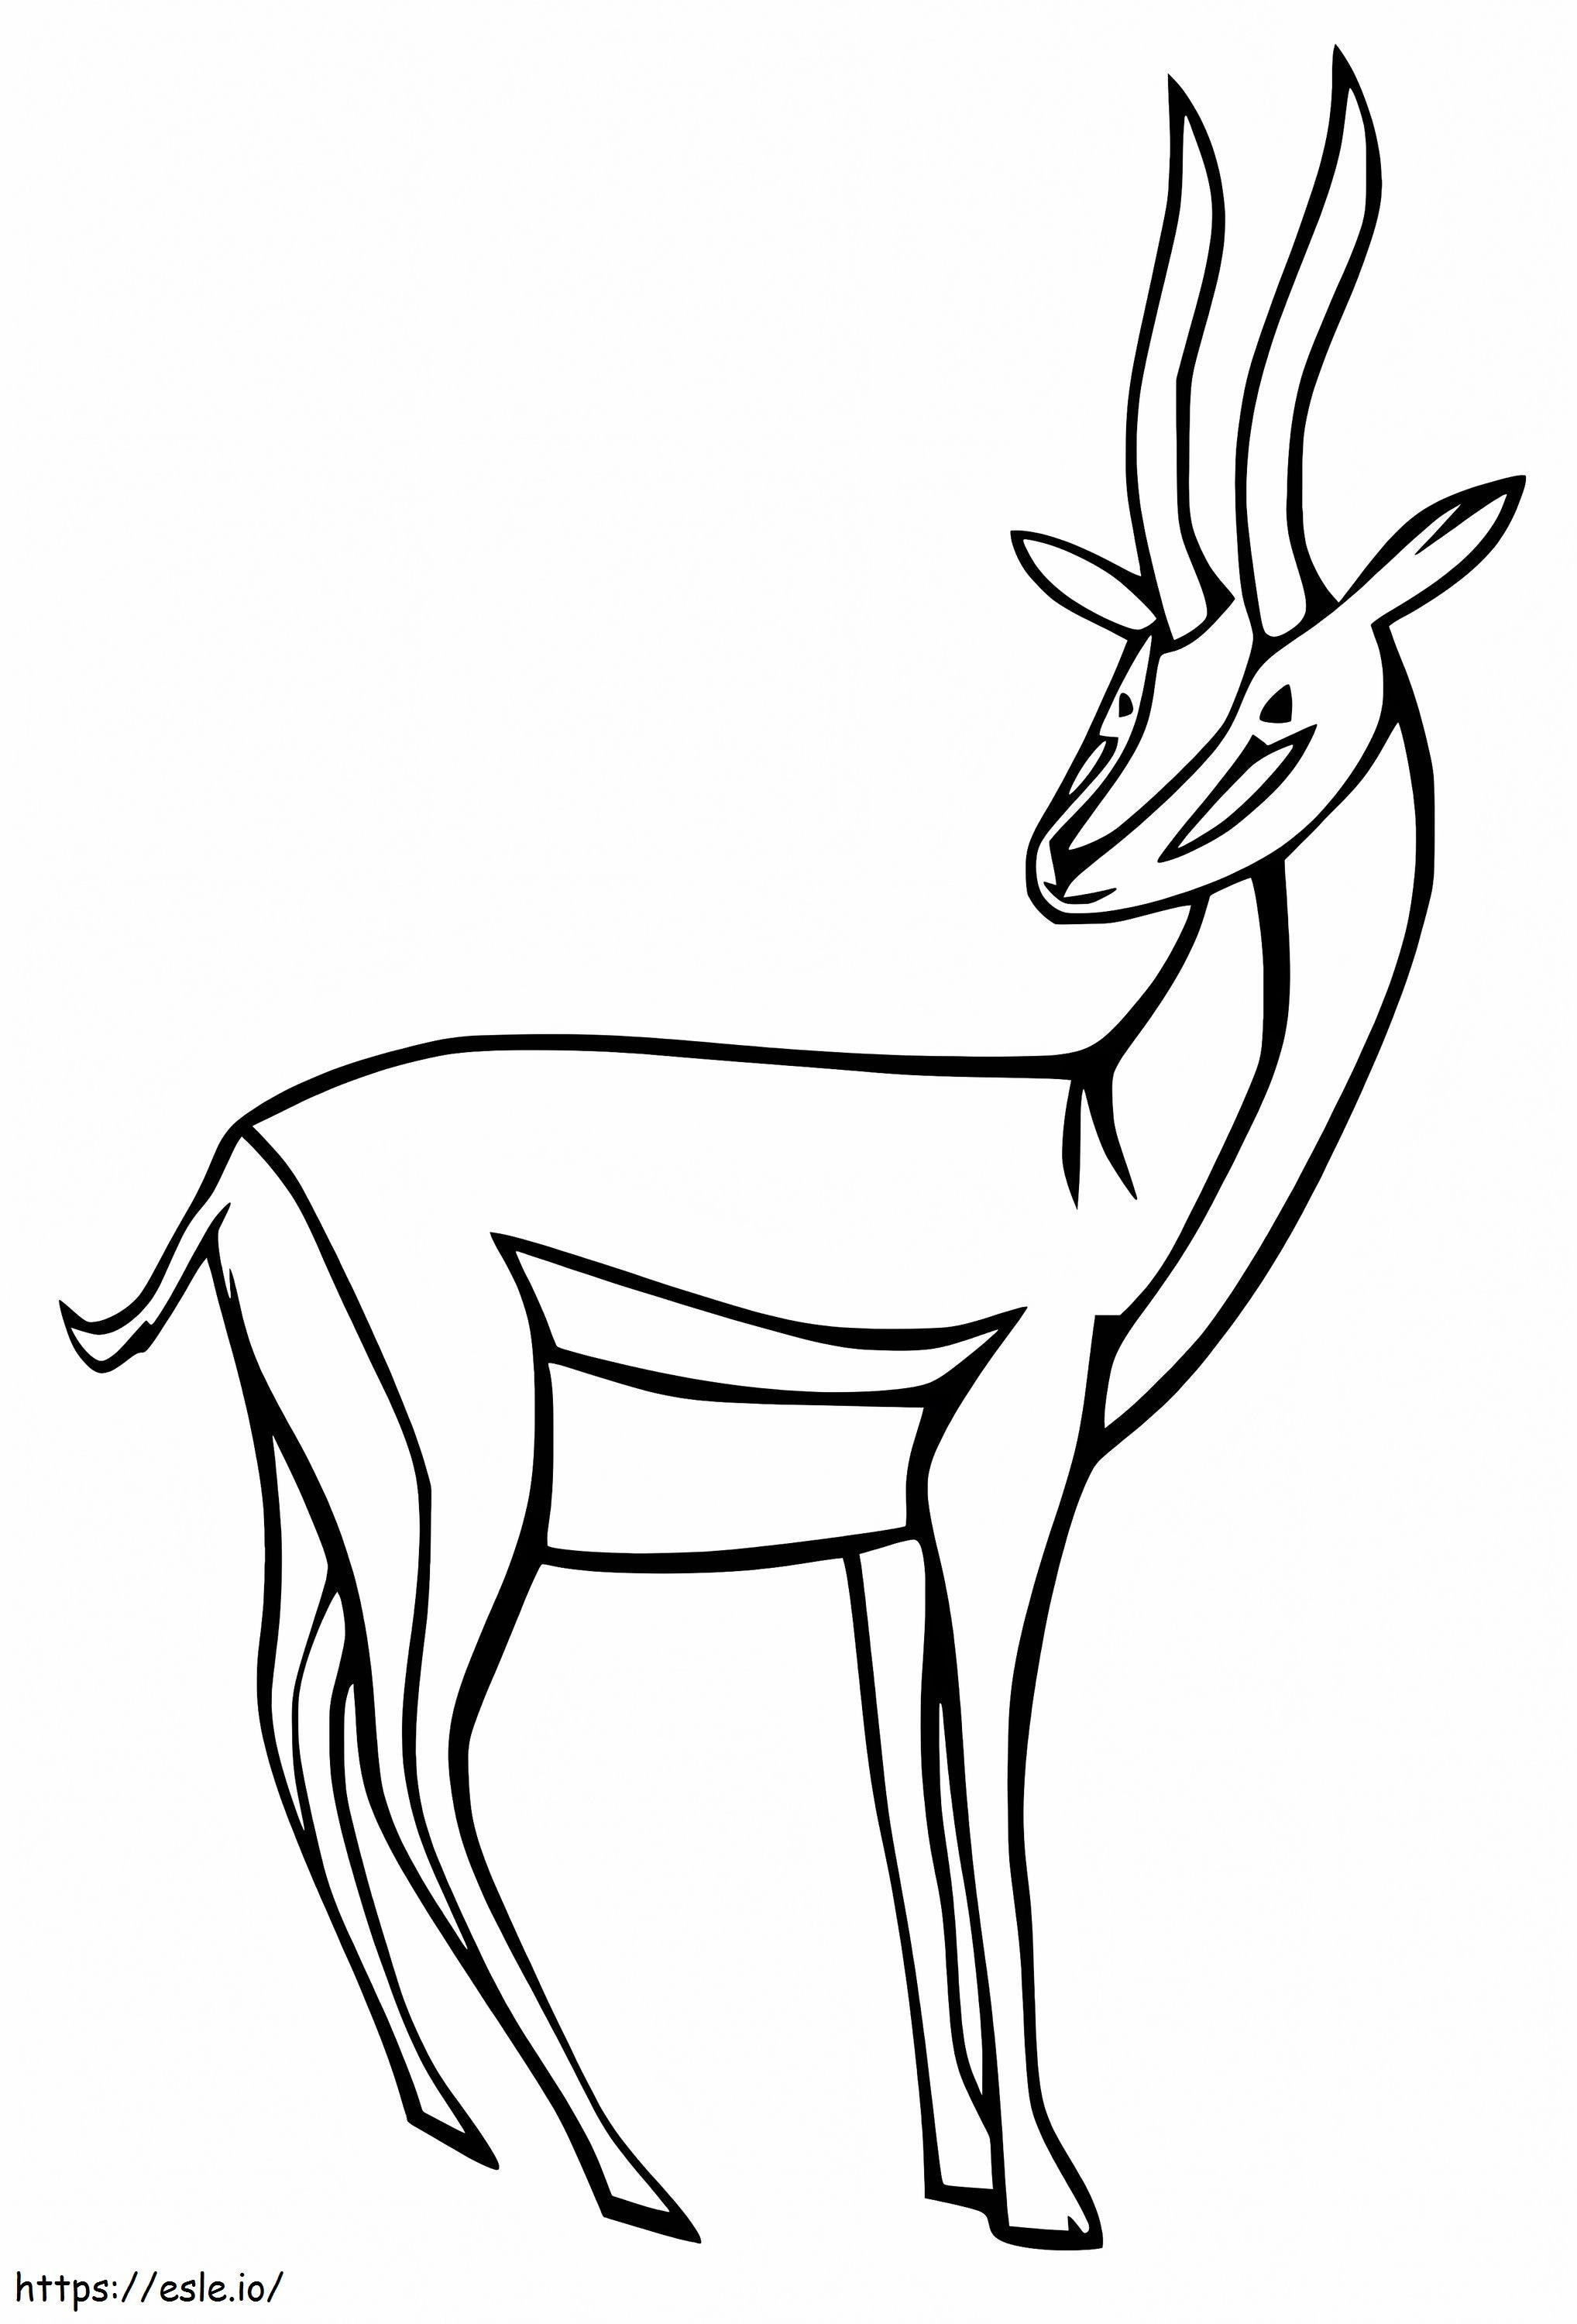 Coloriage Antilope adorable à imprimer dessin